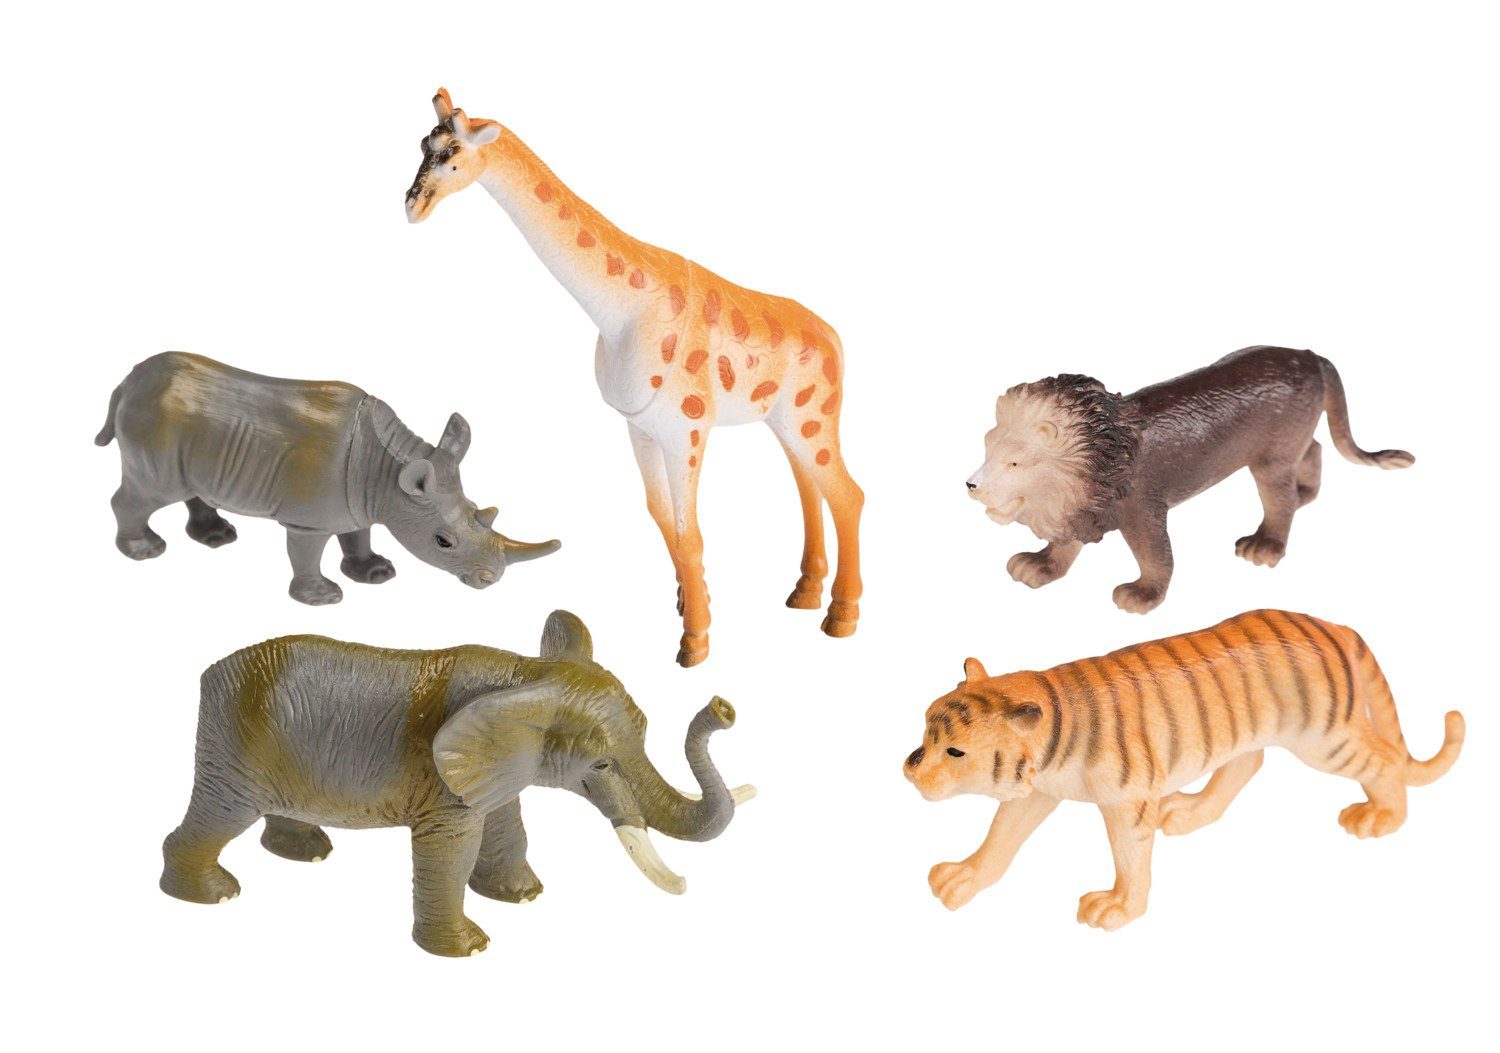 Idena Spielfigur Idena 4320409 - Spielfigurenset mit 5 Zootieren, aus Kunststoff, jewei